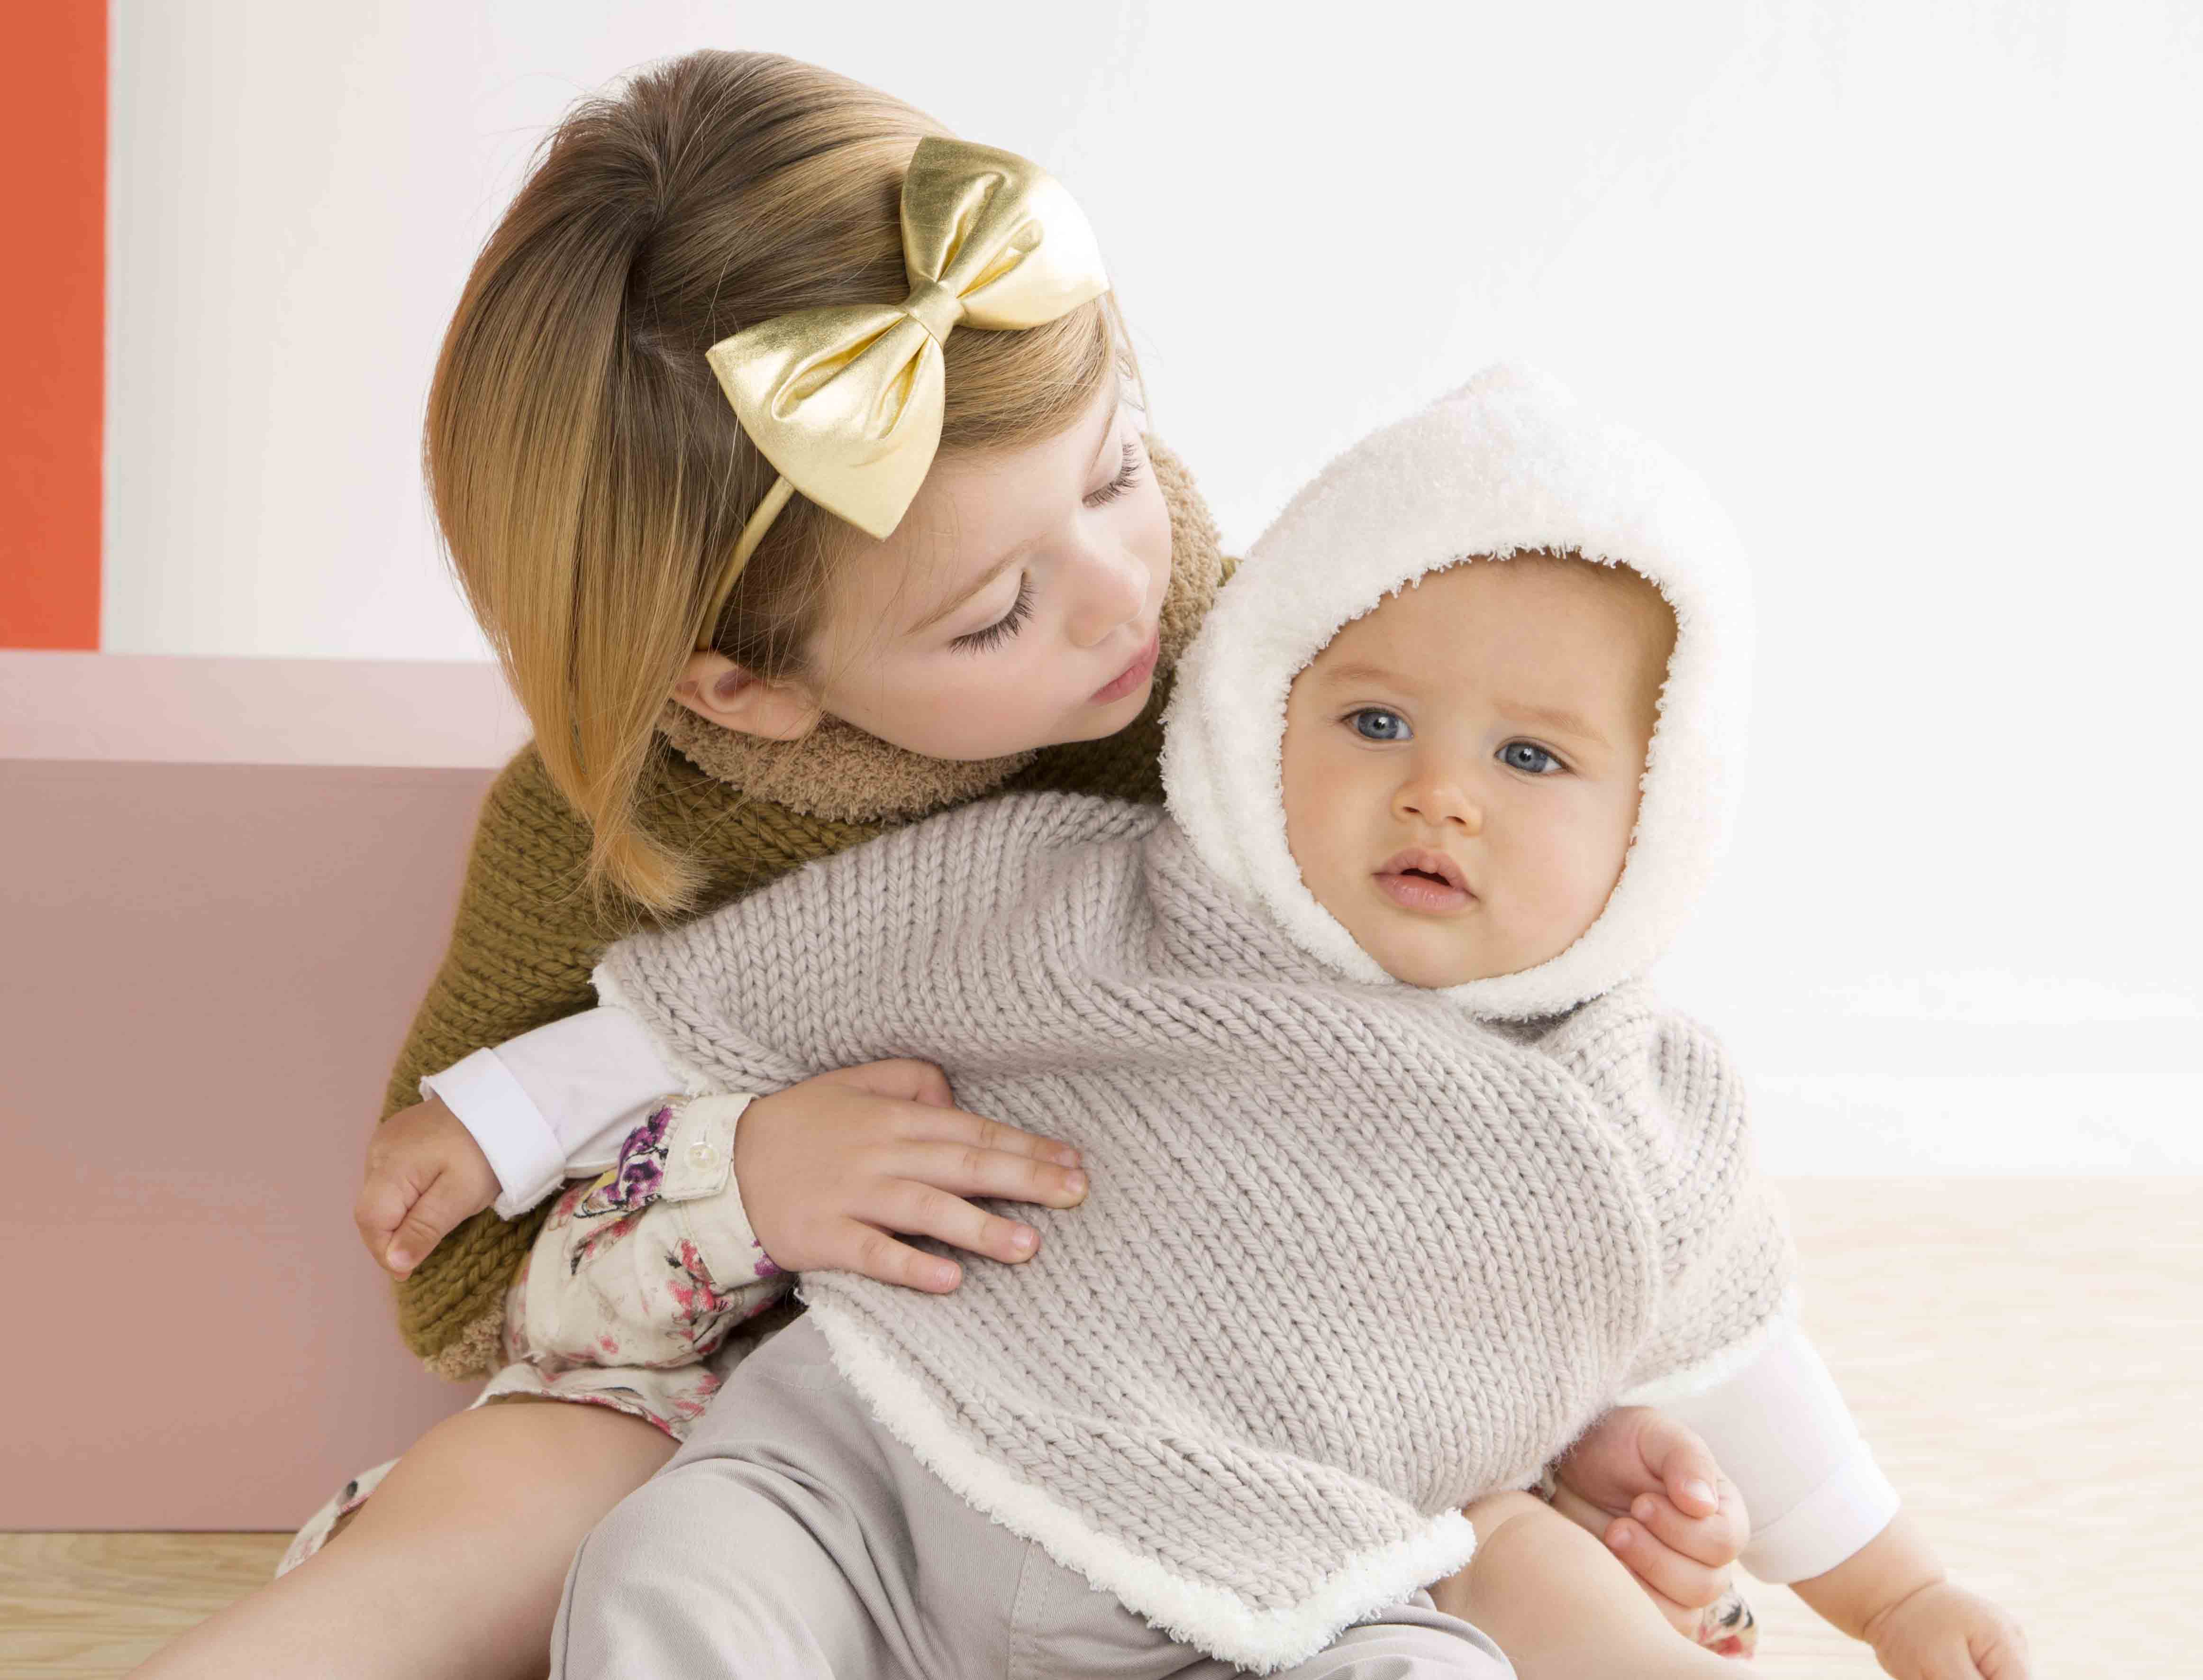 Layette de bébé : les plus beaux modèles à tricoter - Femme Actuelle